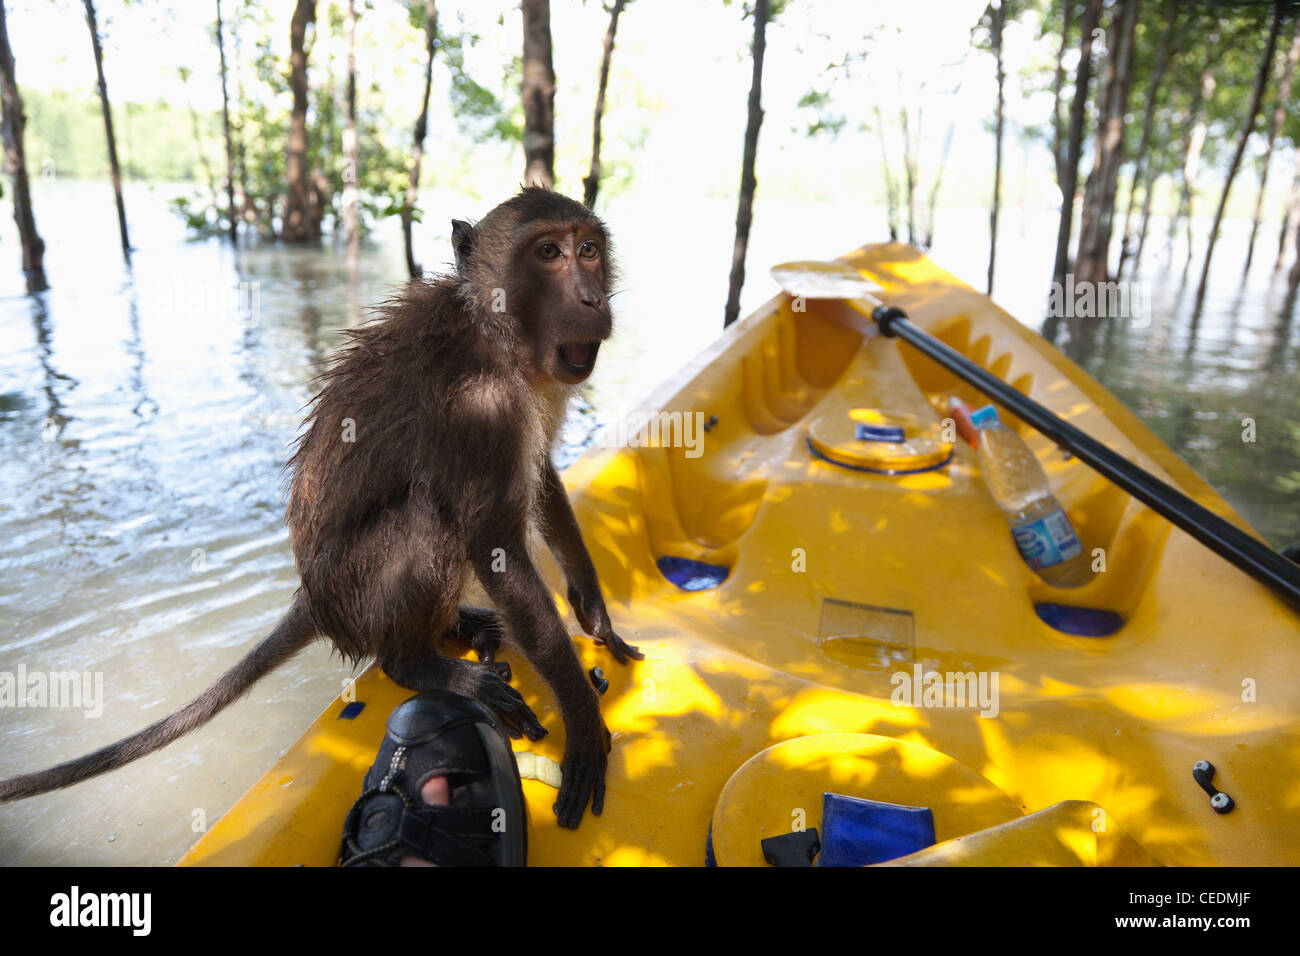 Monkey sitting on kayak dans l'eau Banque D'Images